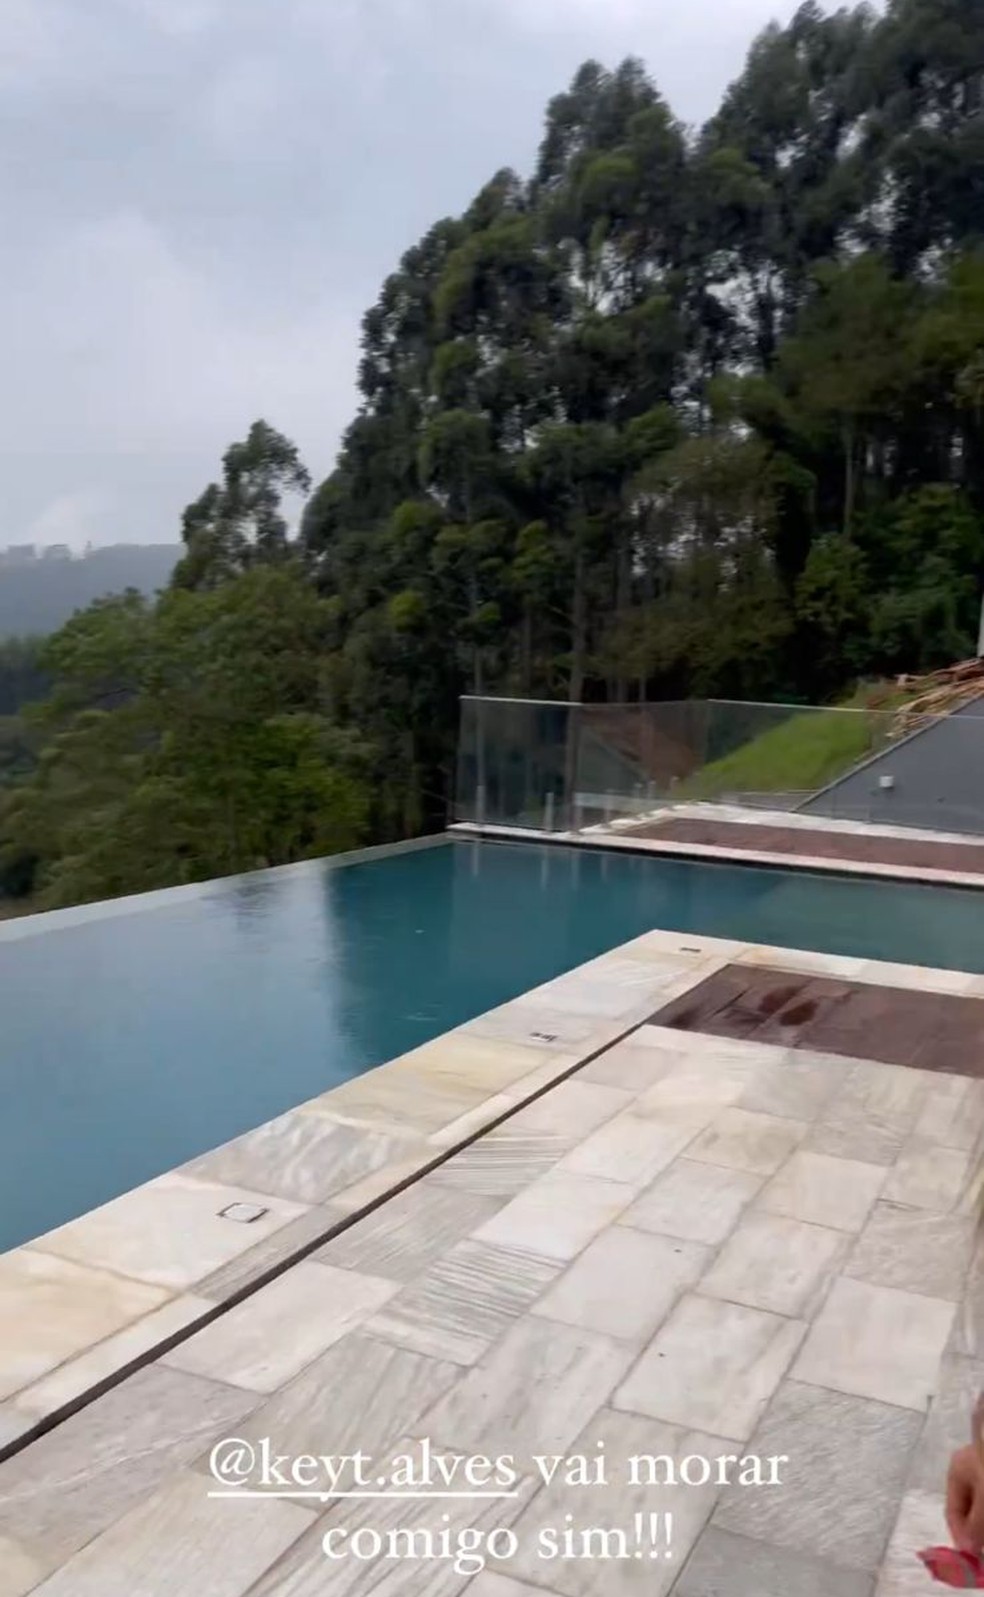 Key Alves mostrou alguns detalhes de sua nova mansão — Foto: Reprodução/ Instagram